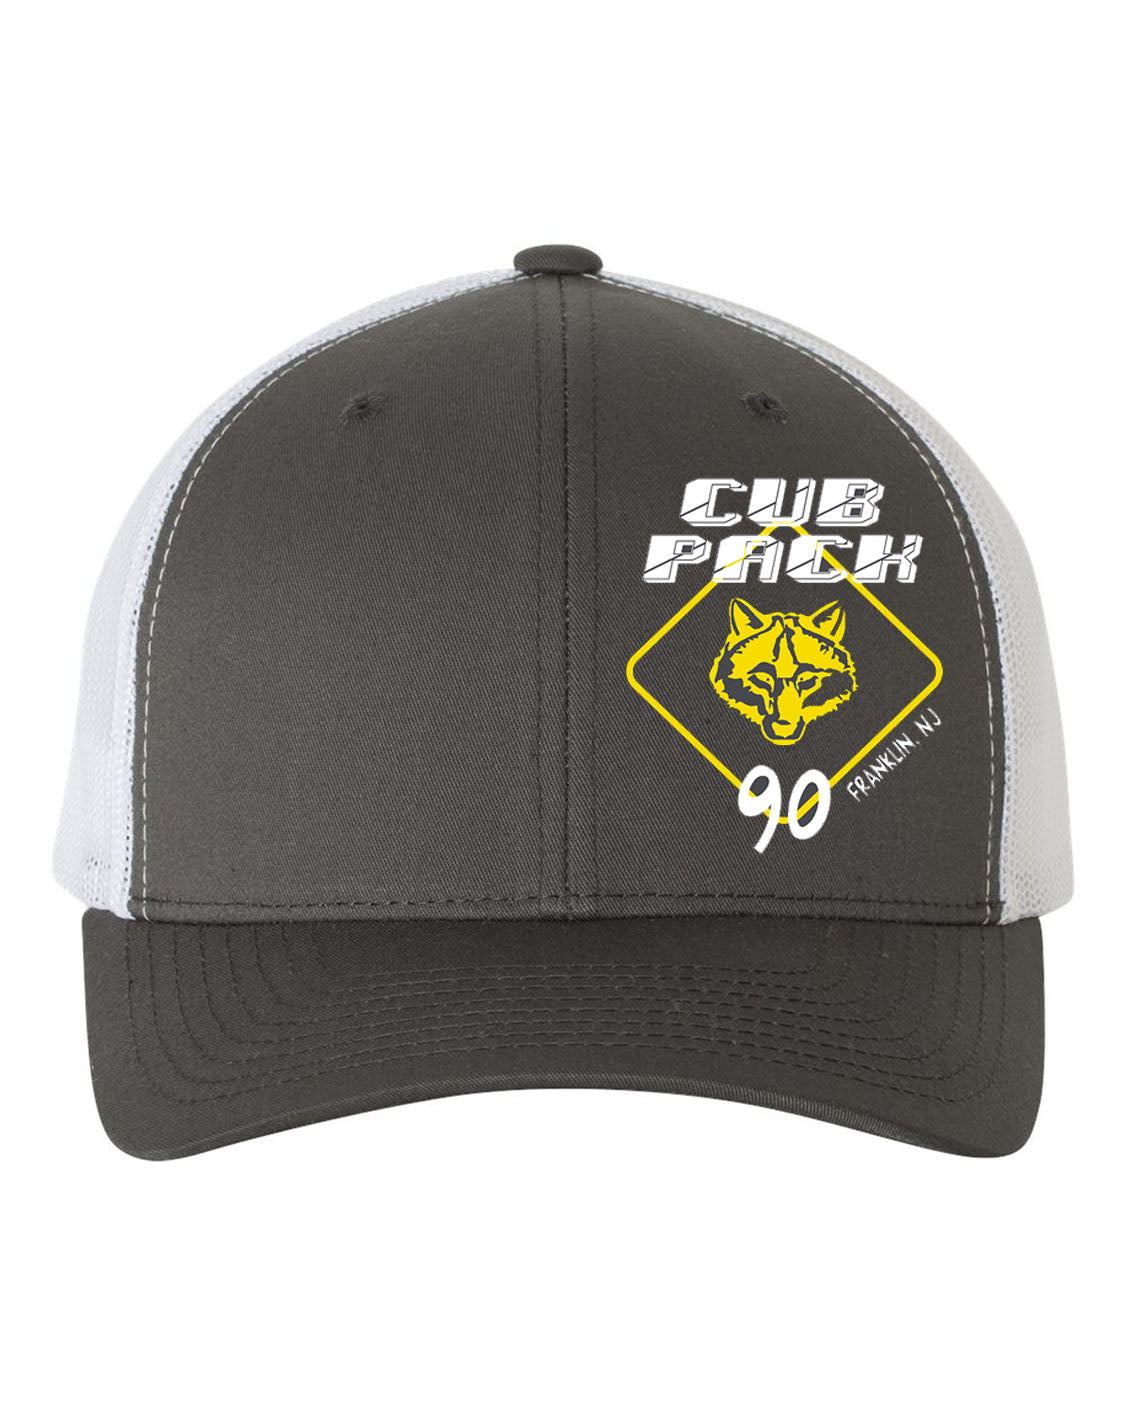 Cub Scout Pack 90 Design 2 Trucker Hat